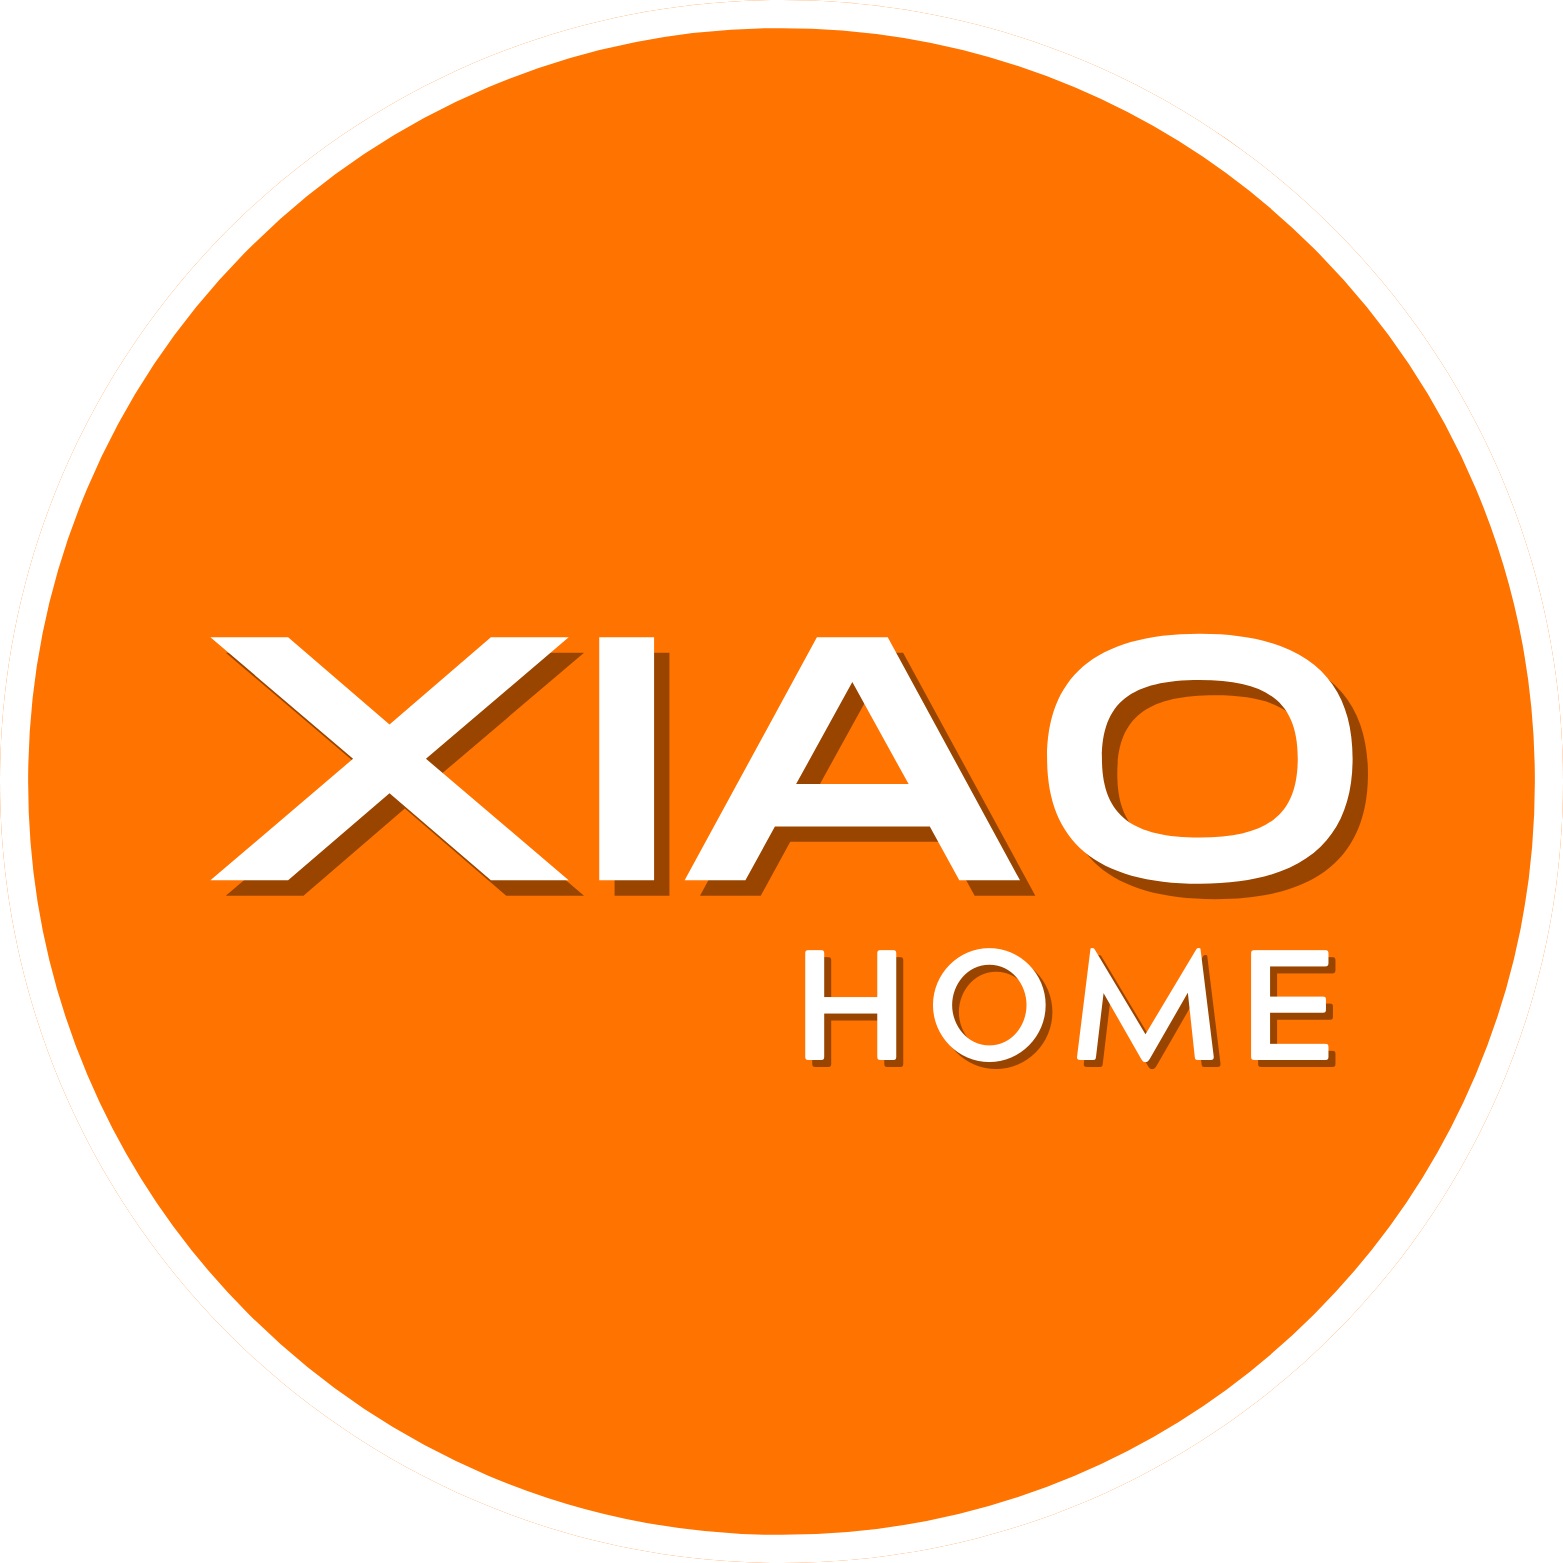 XIAO HOME